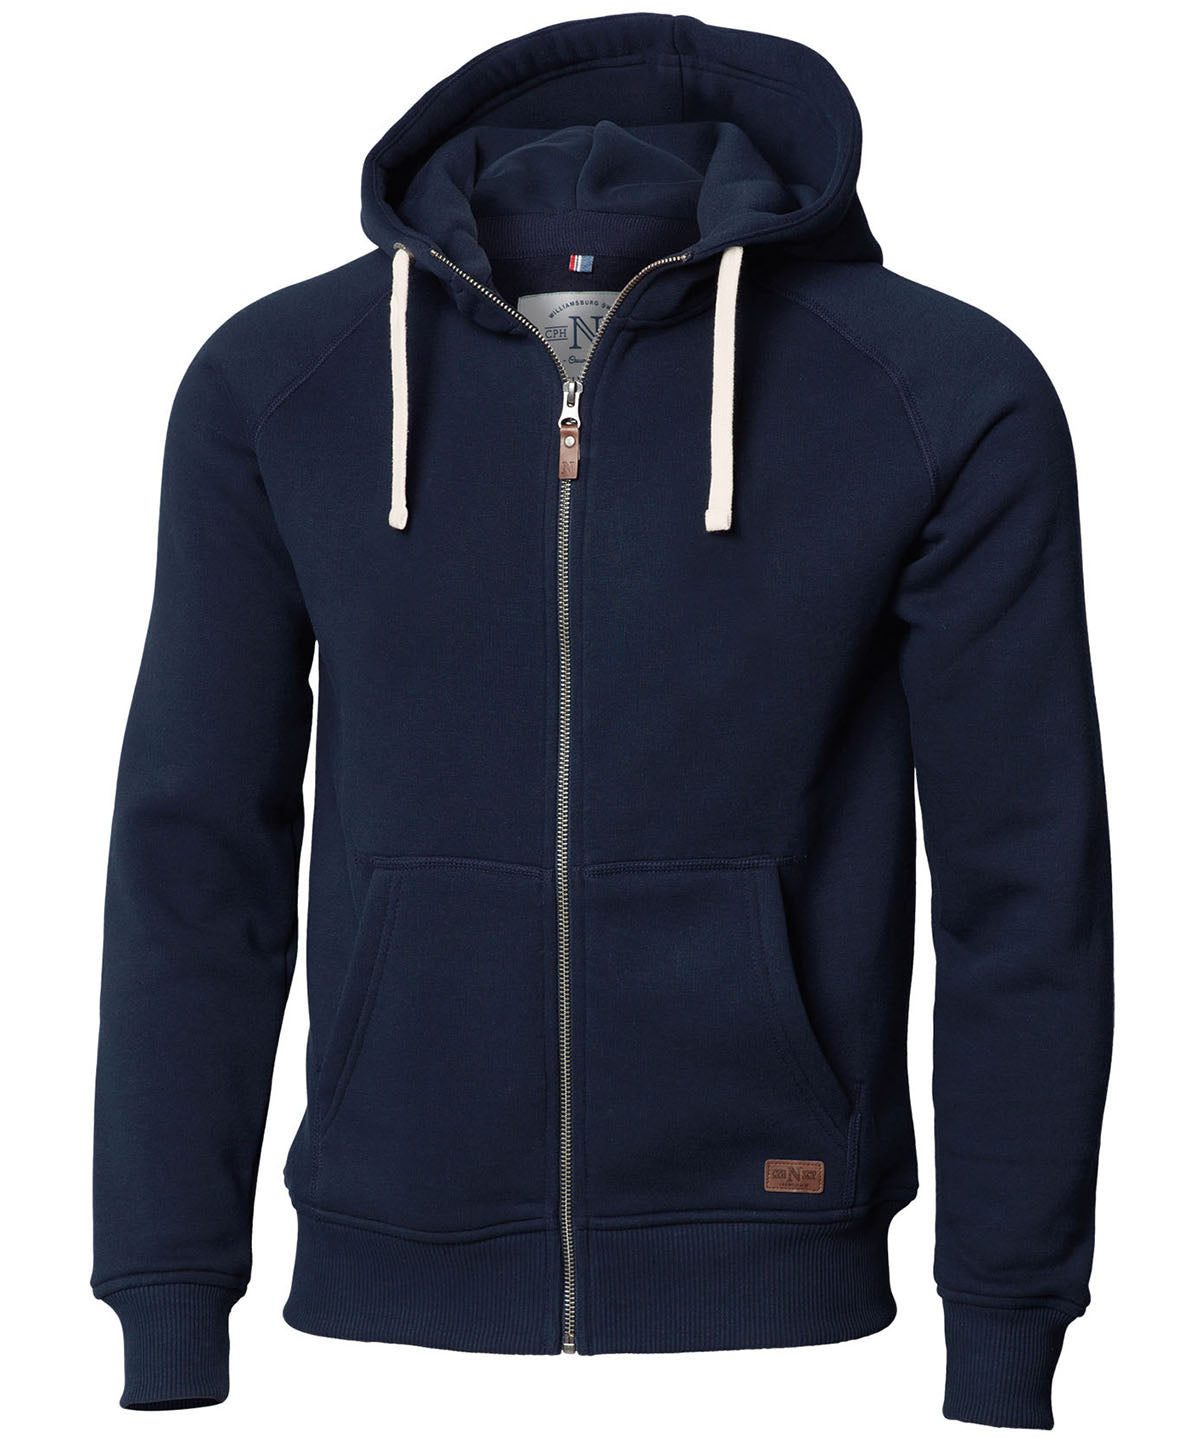 Personalised Hoodies - Black Nimbus Williamsburg – fashionable hooded sweatshirt